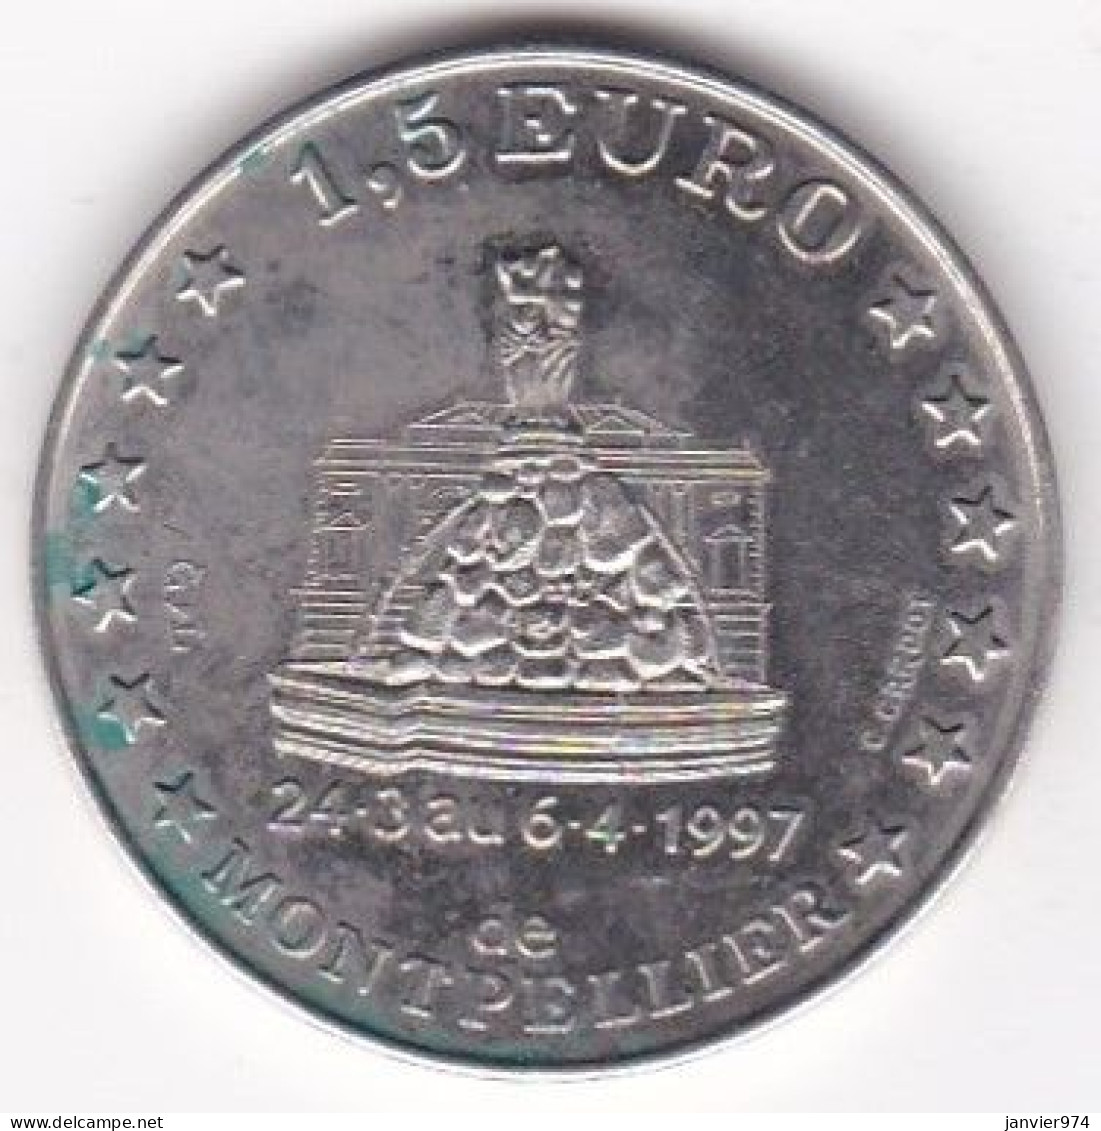 Hérault. 1,5 Euro De Montpellier 1997 Centenaire De Sup De Co - Euros Des Villes